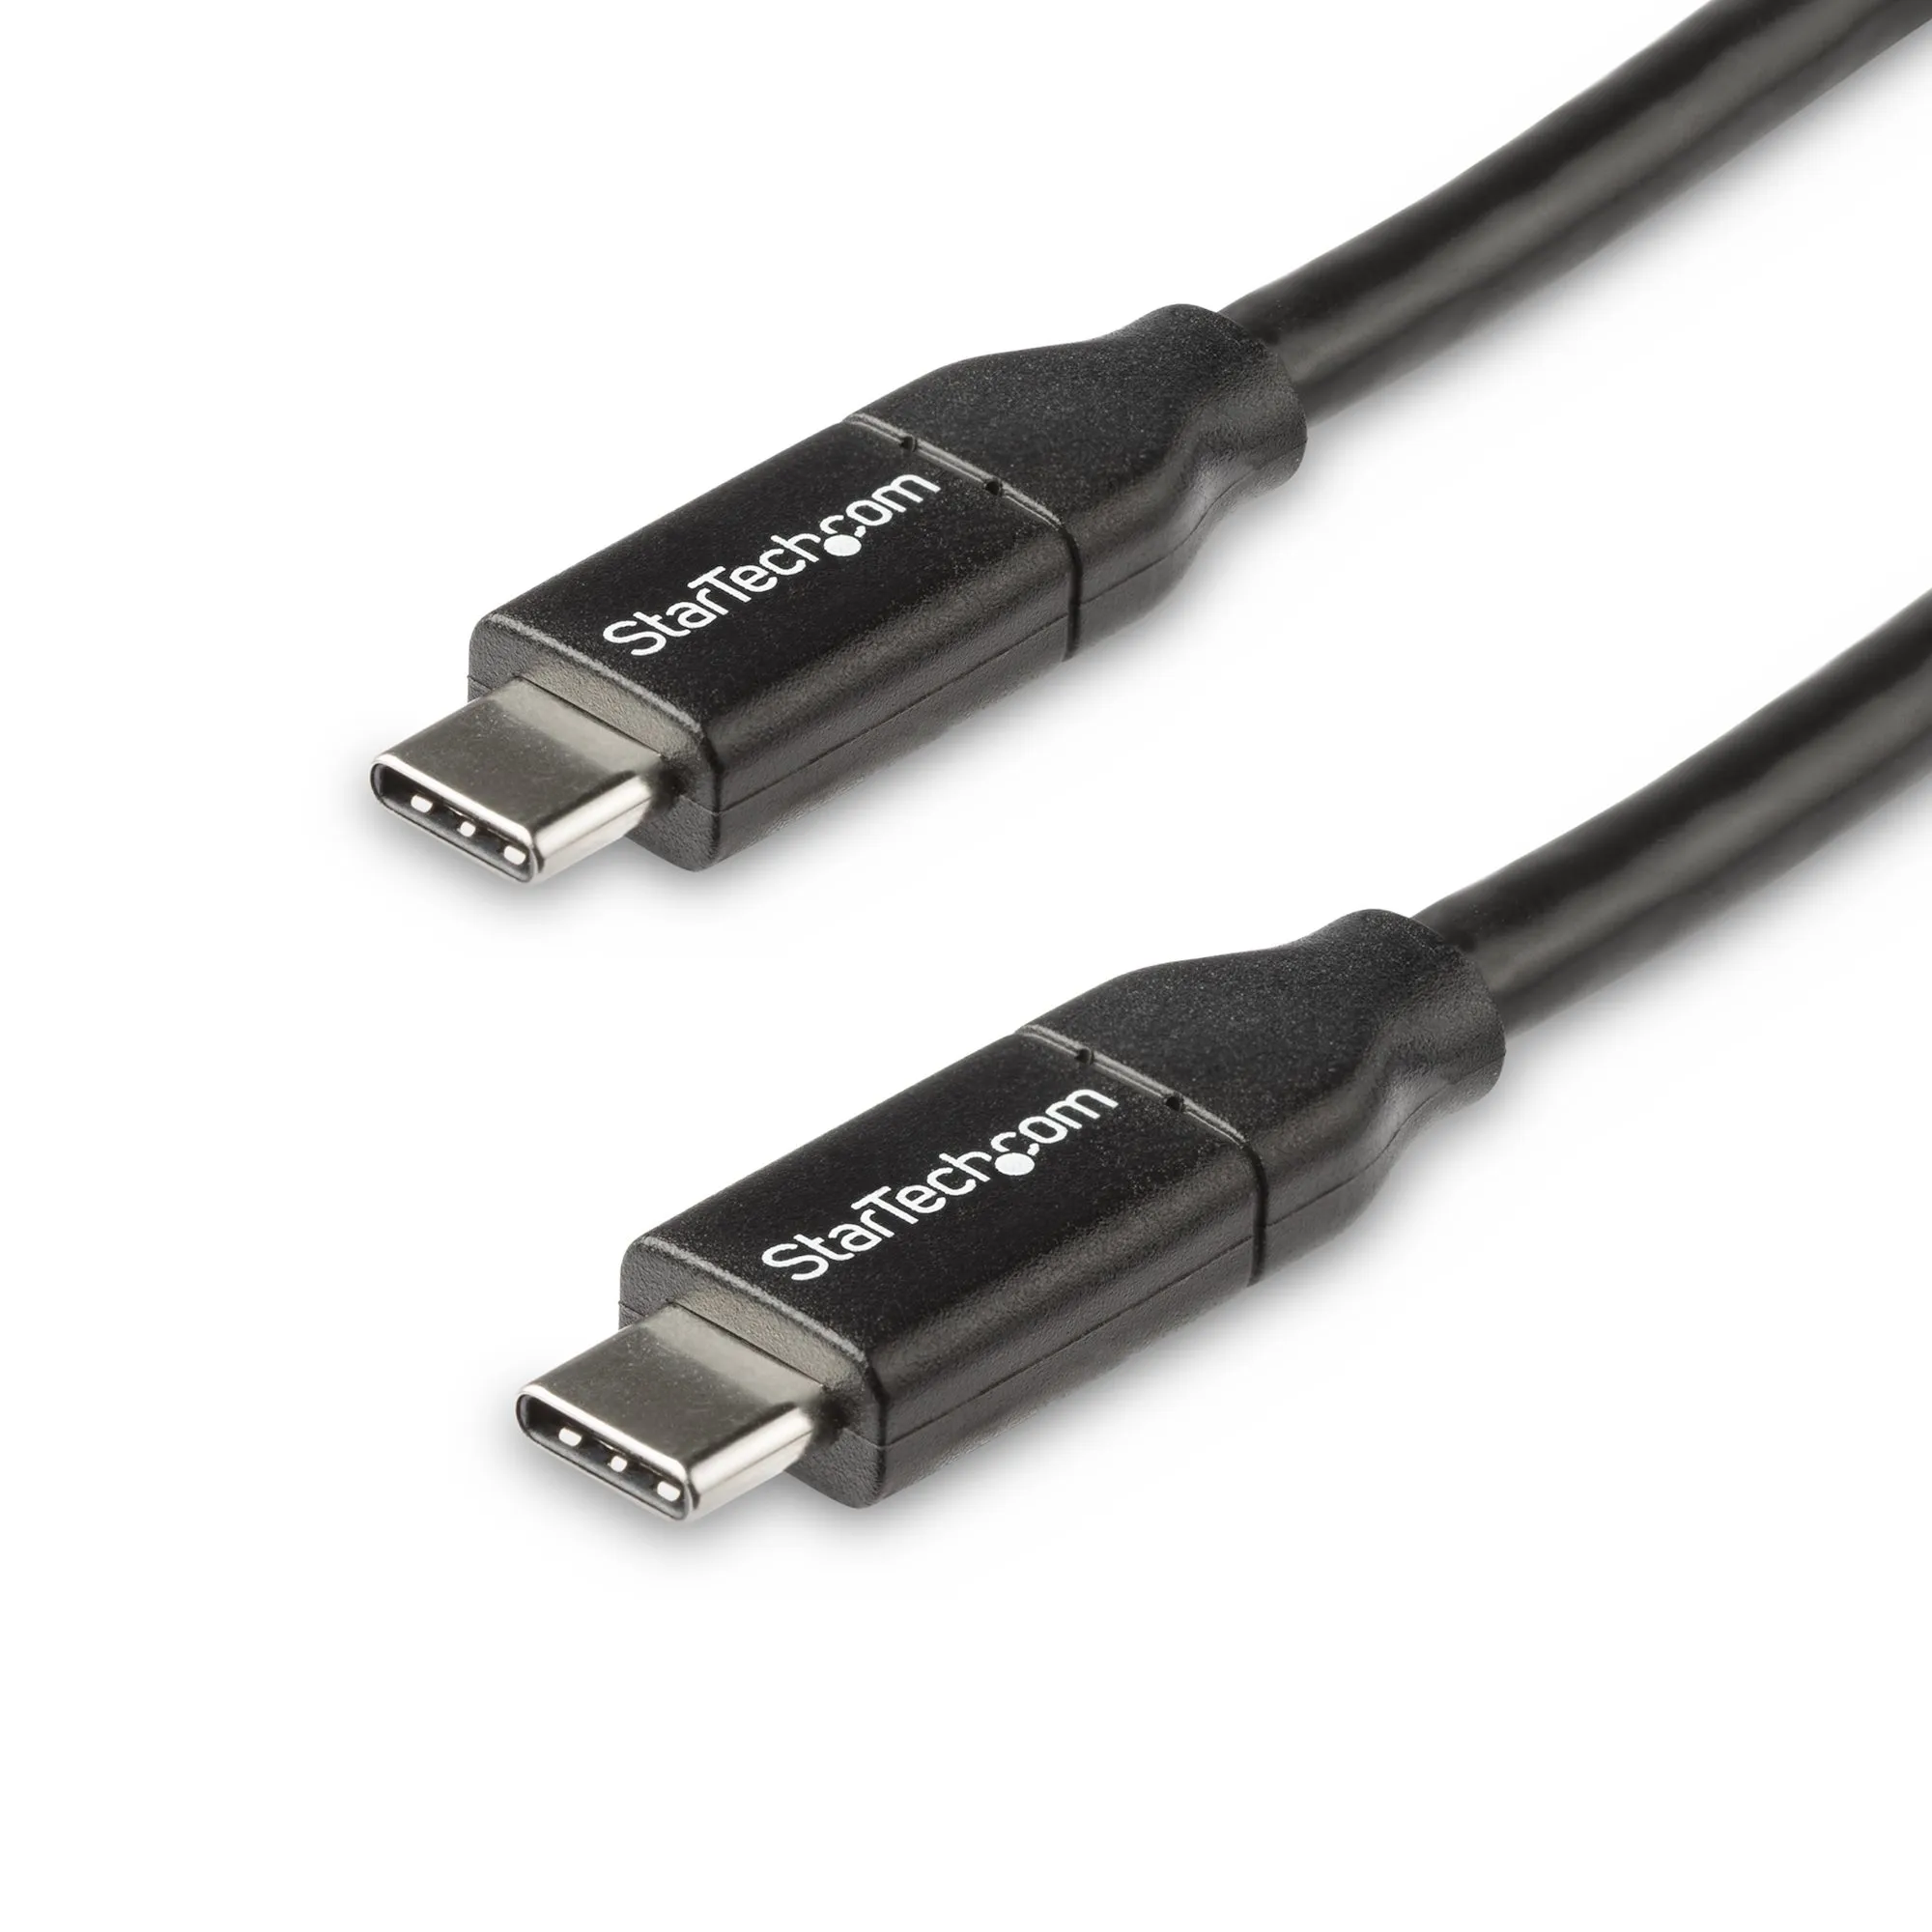 Achat StarTech.com Câble USB-C vers USB-C avec Power Delivery sur hello RSE - visuel 5